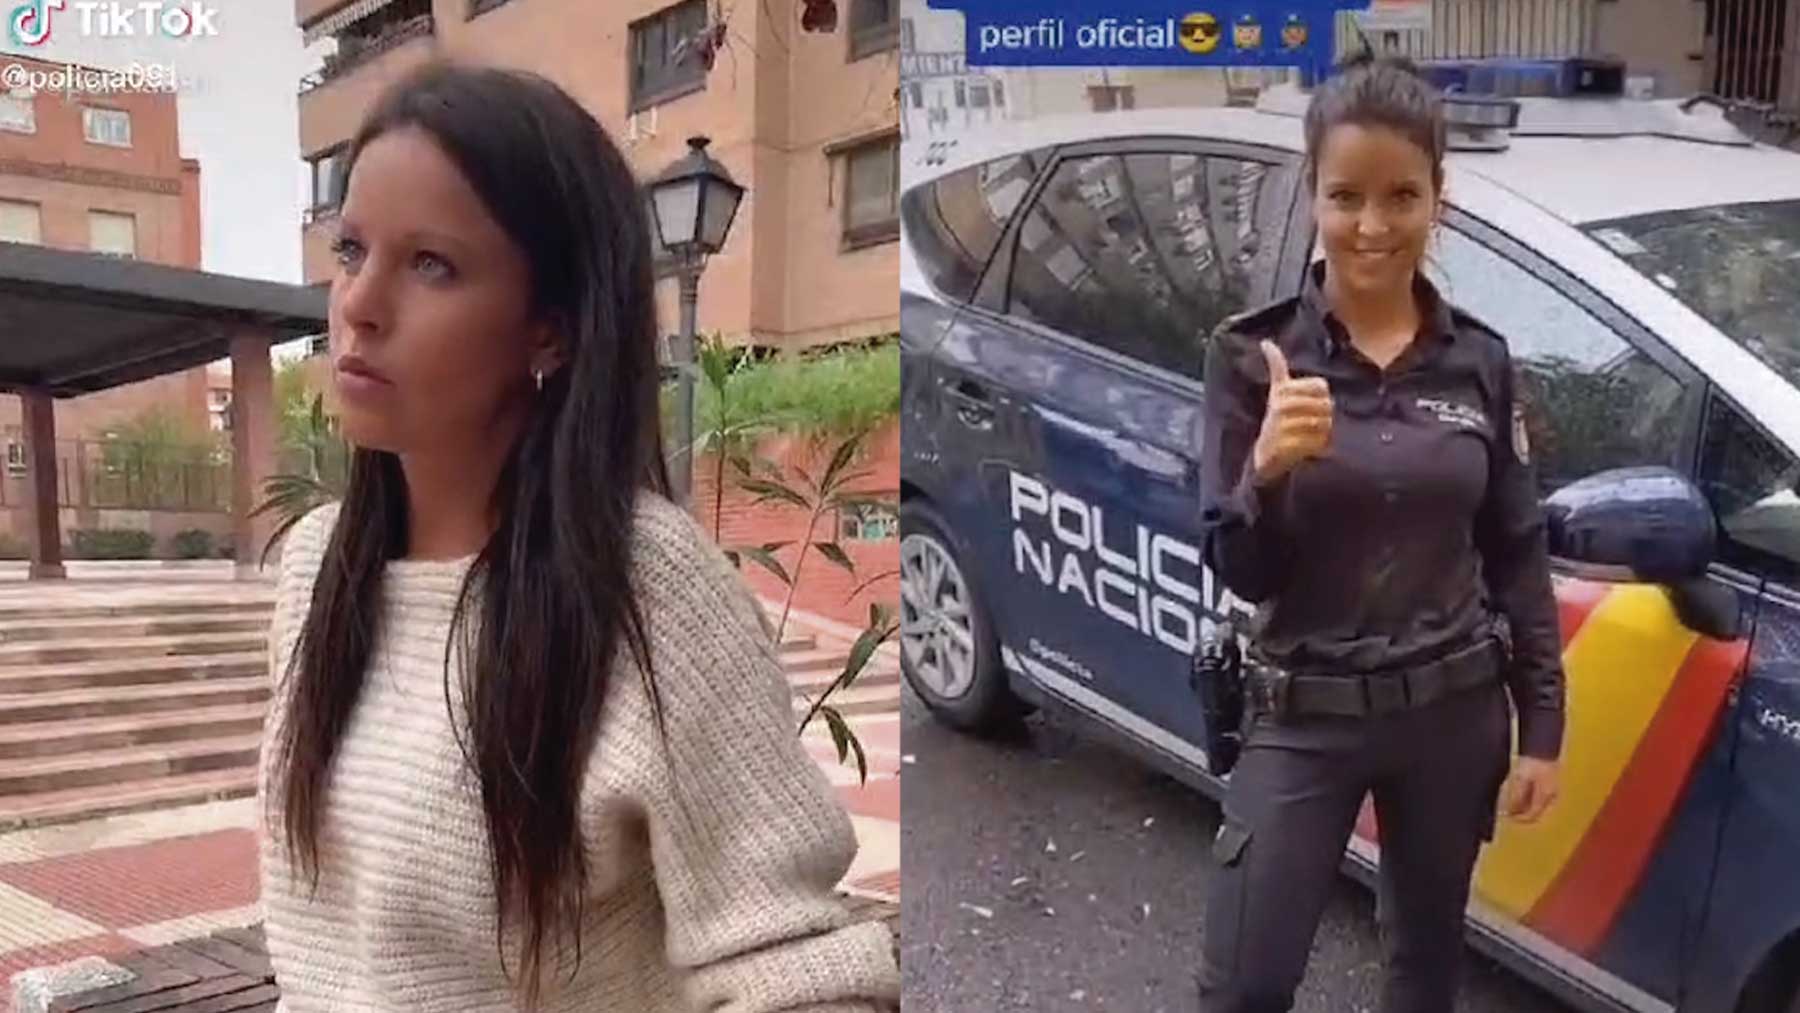 El vídeo de la agente subido al canal oficial de TikTok en la Policía Nacional.